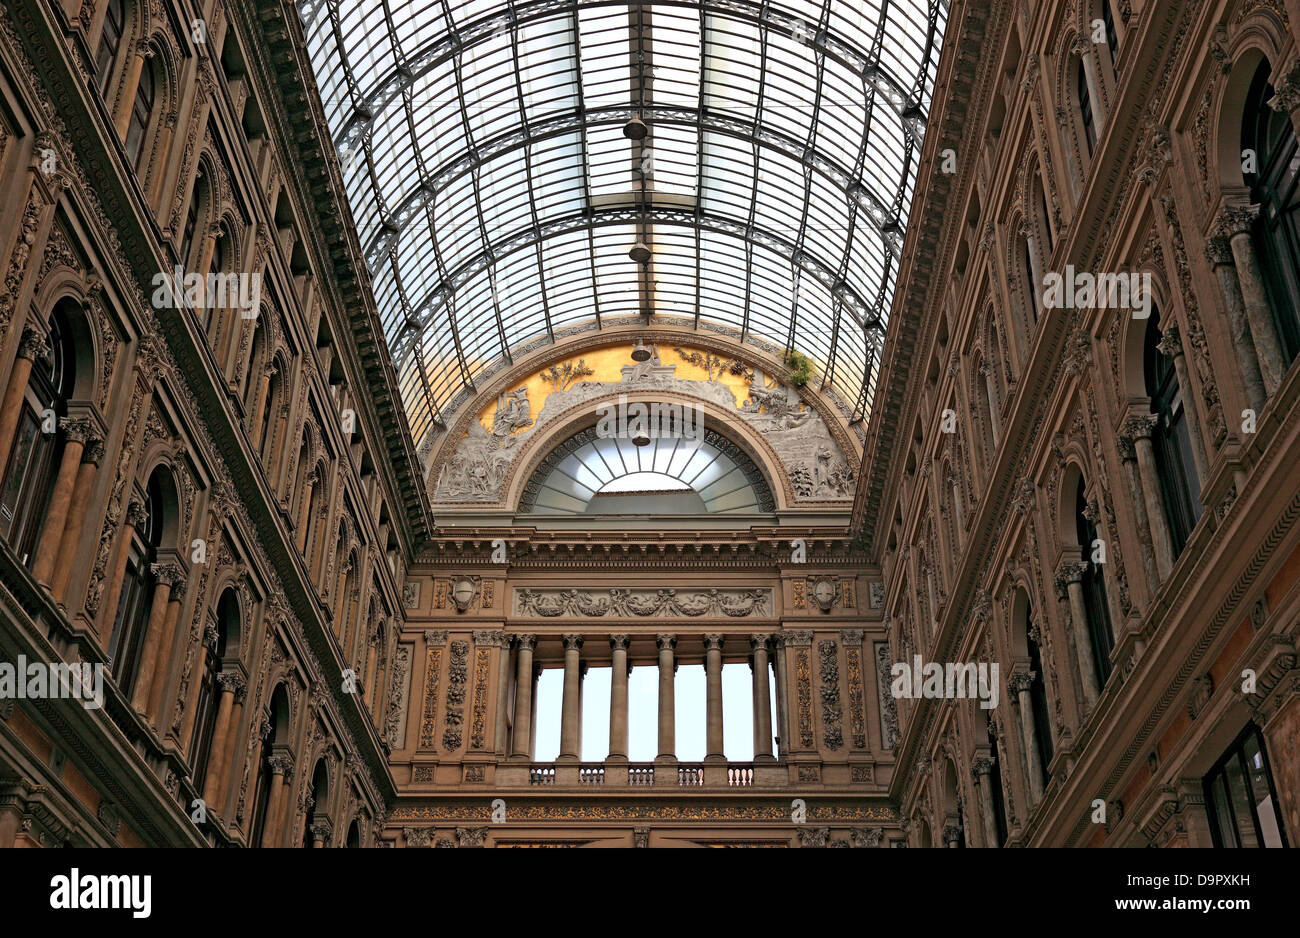 La Galleria Umberto, une galerie marchande dans la vieille ville de Naples, Campanie, Italie Banque D'Images